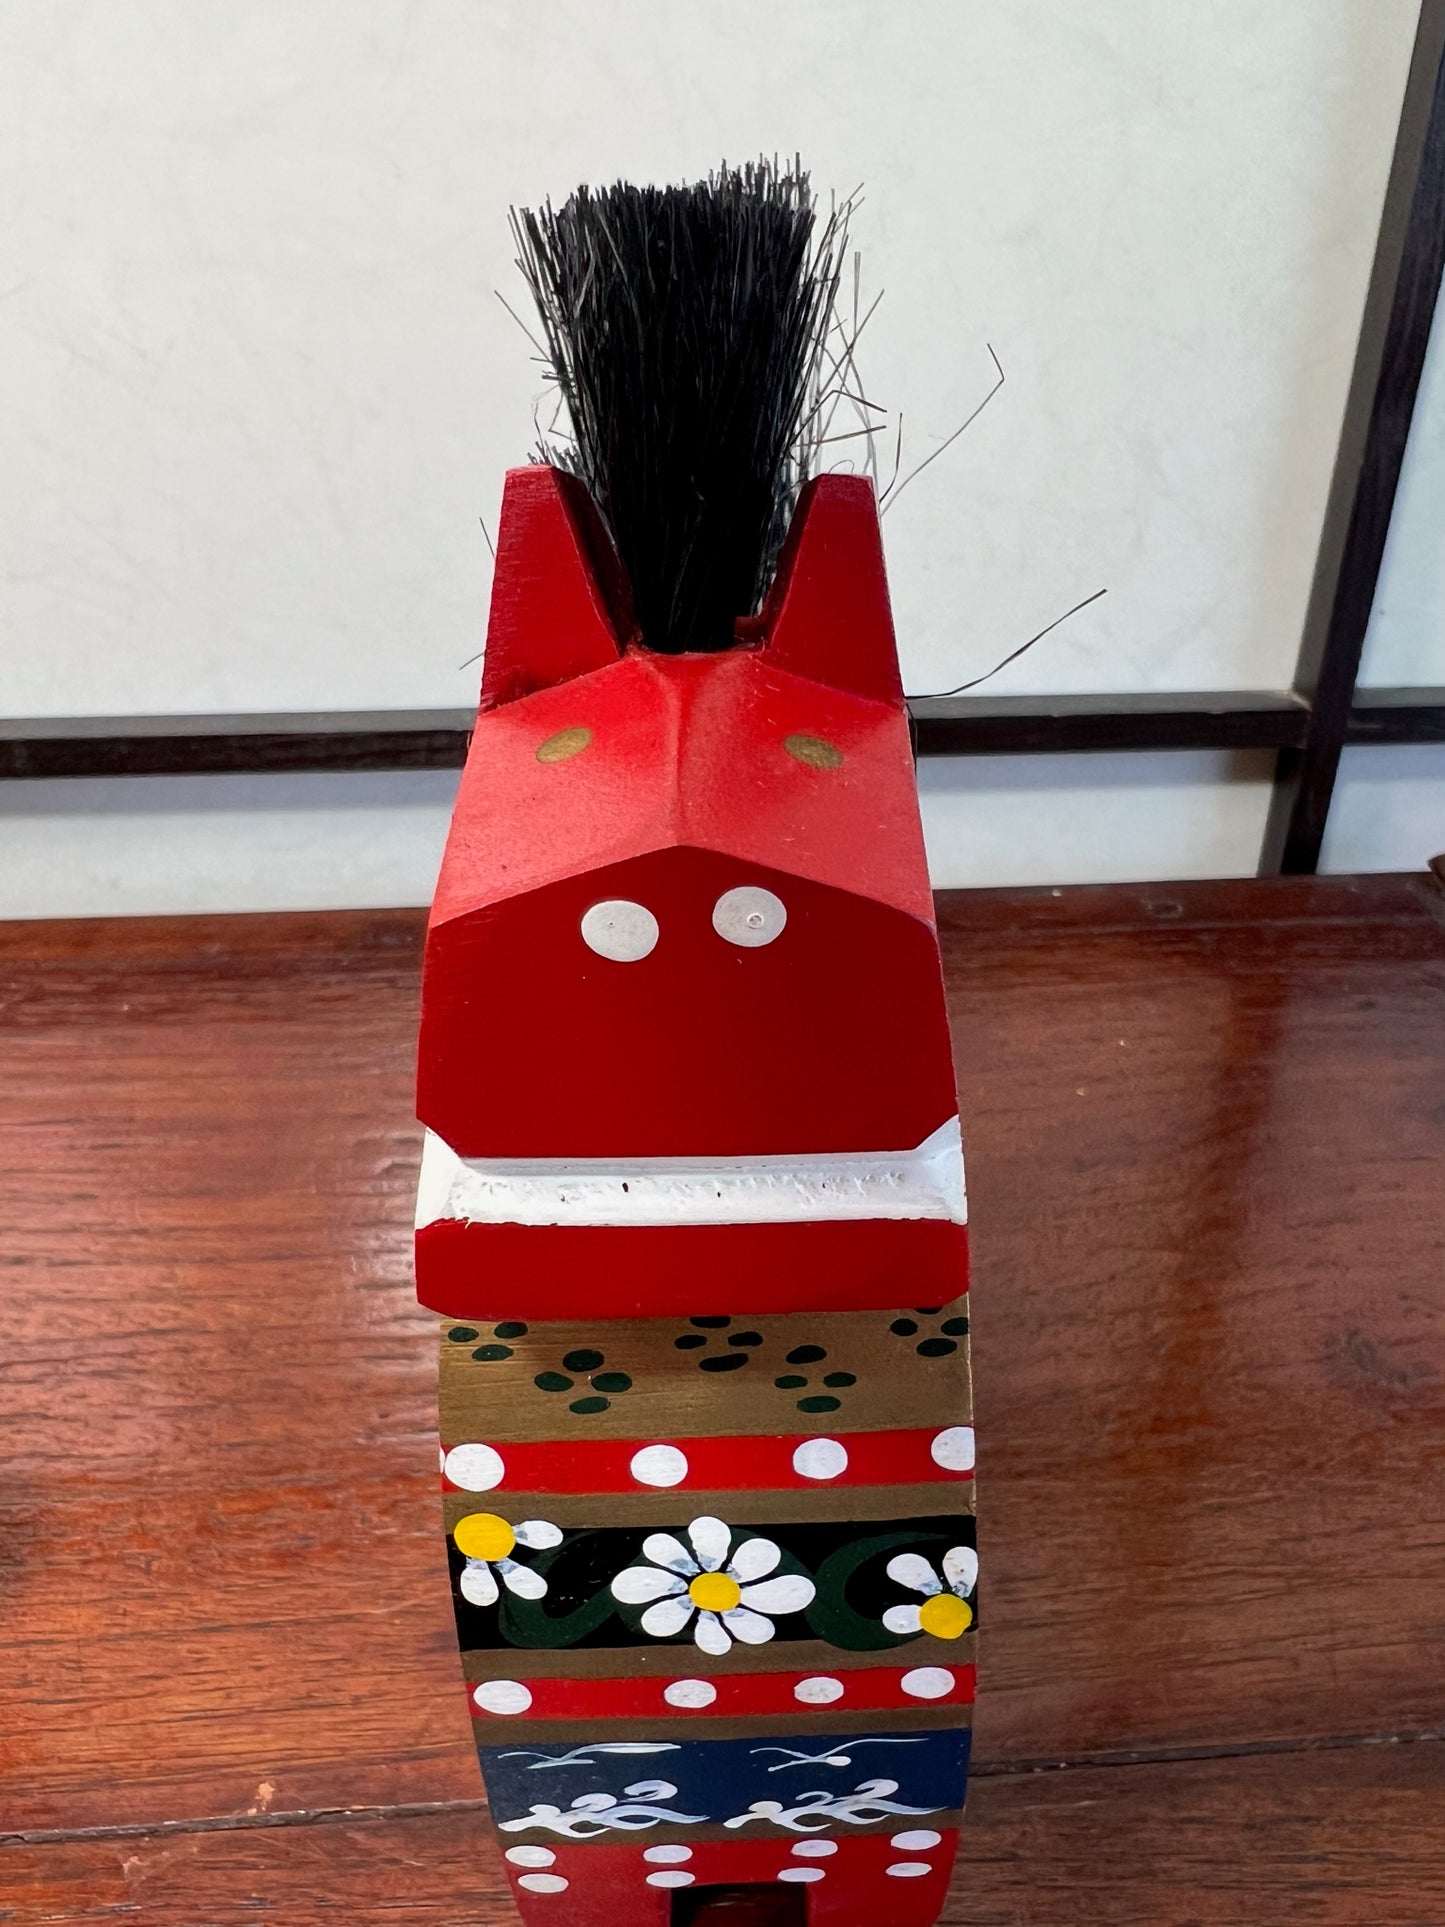 Cheval traditionnel en bois rouge de face en gros plan, bouche et naseaux blanc